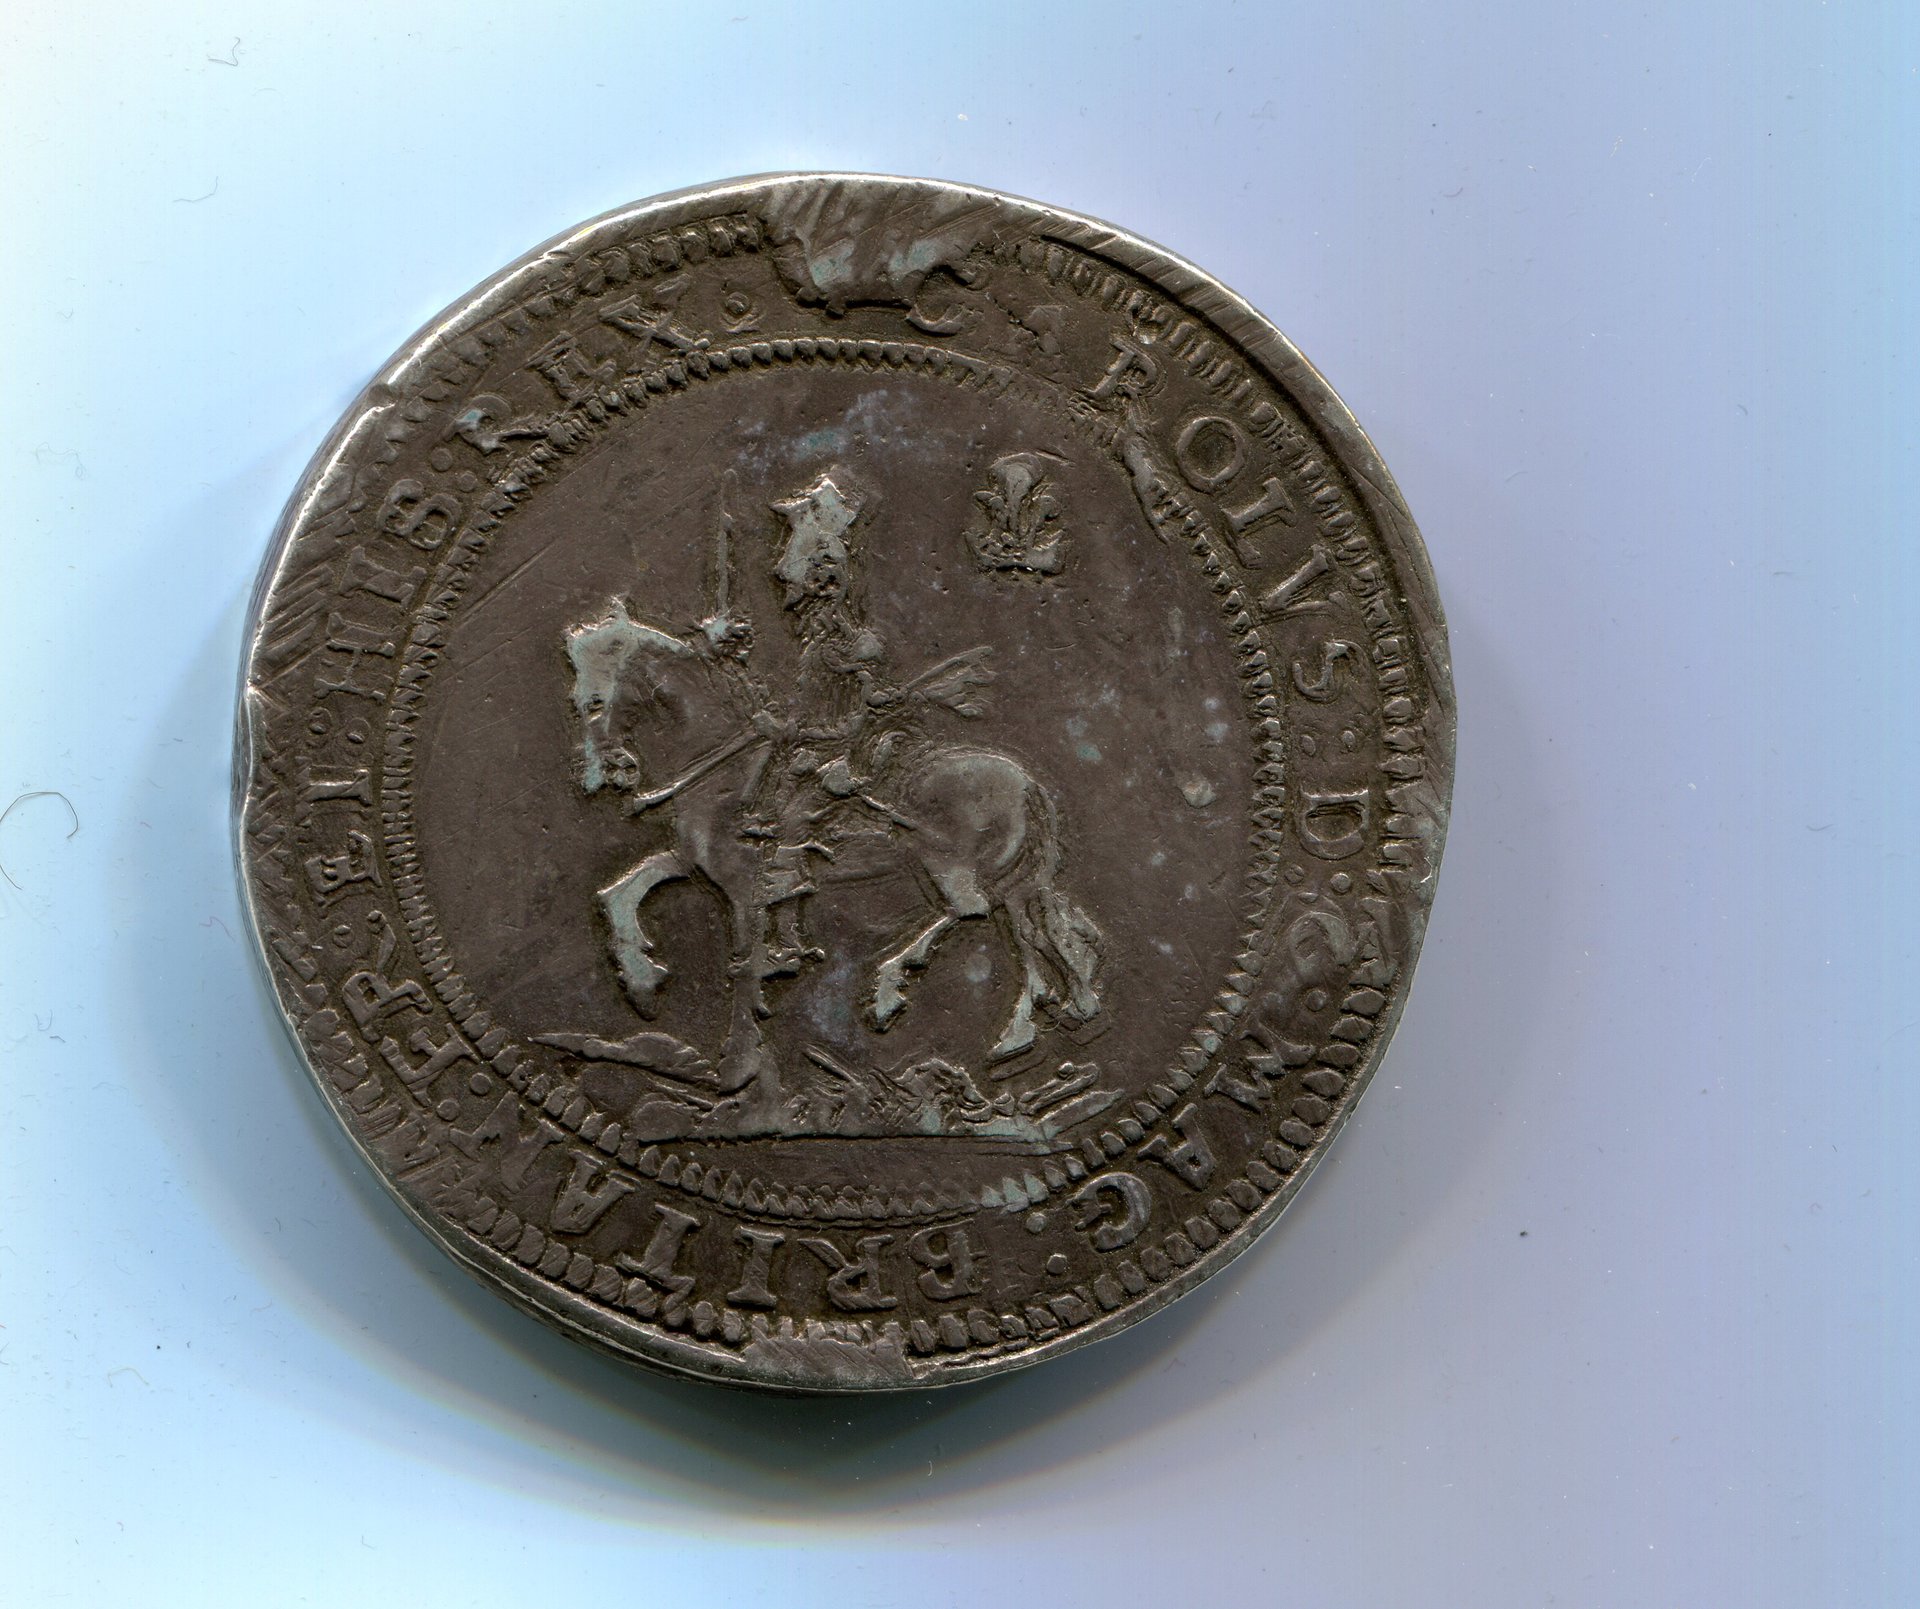 England Chas I Pound Shrewsbury 1642 LD obv 154.jpg